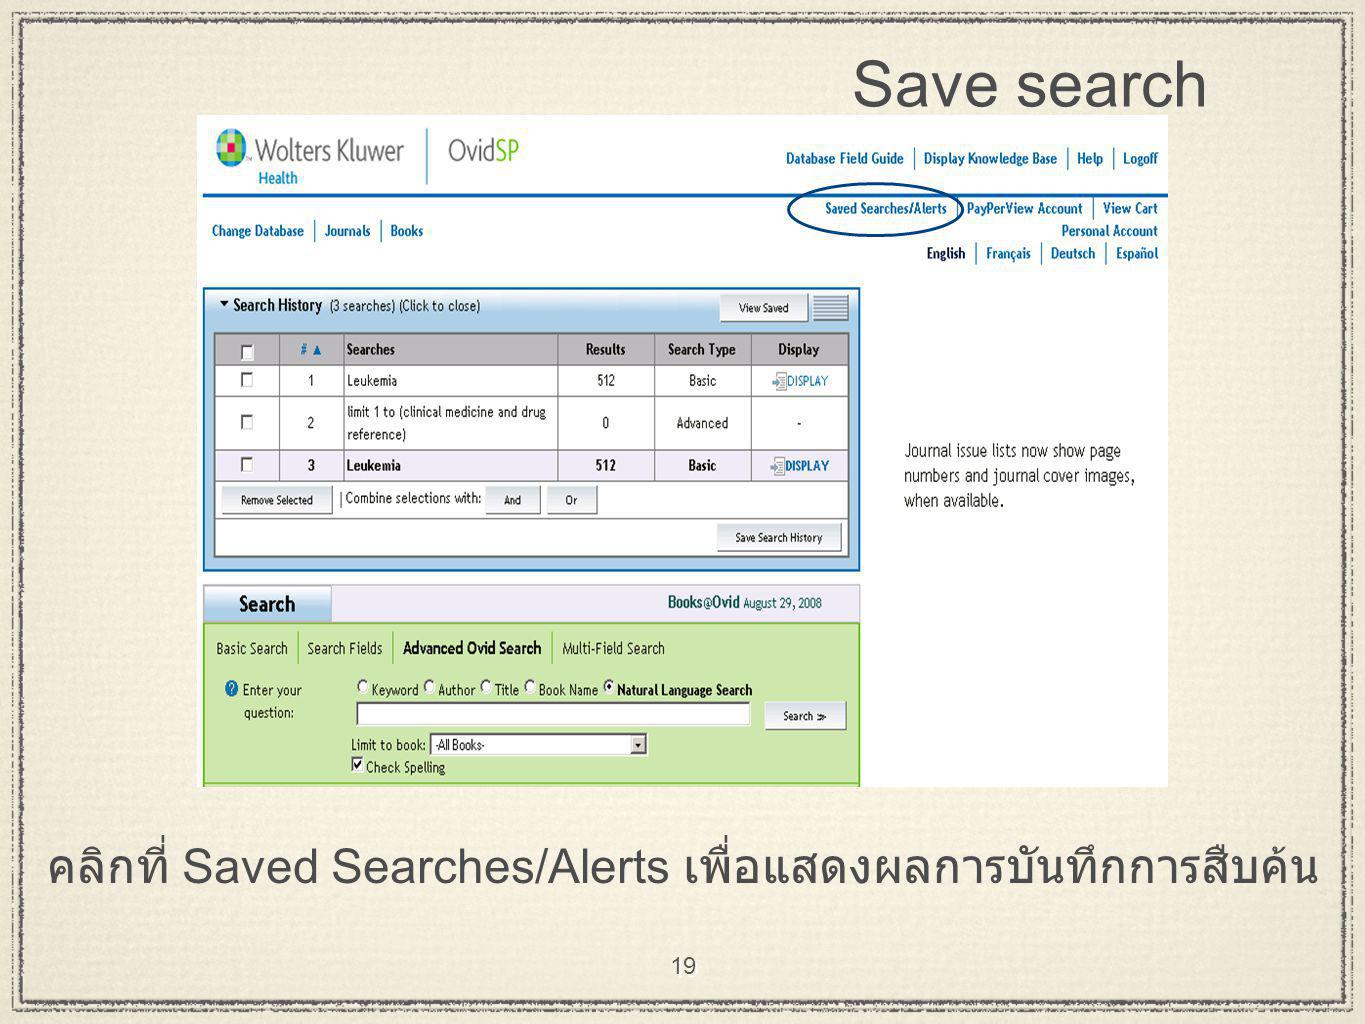 19 Save search คลิกที่ Saved Searches/Alerts เพื่อแสดงผลการบันทึกการสืบค้น